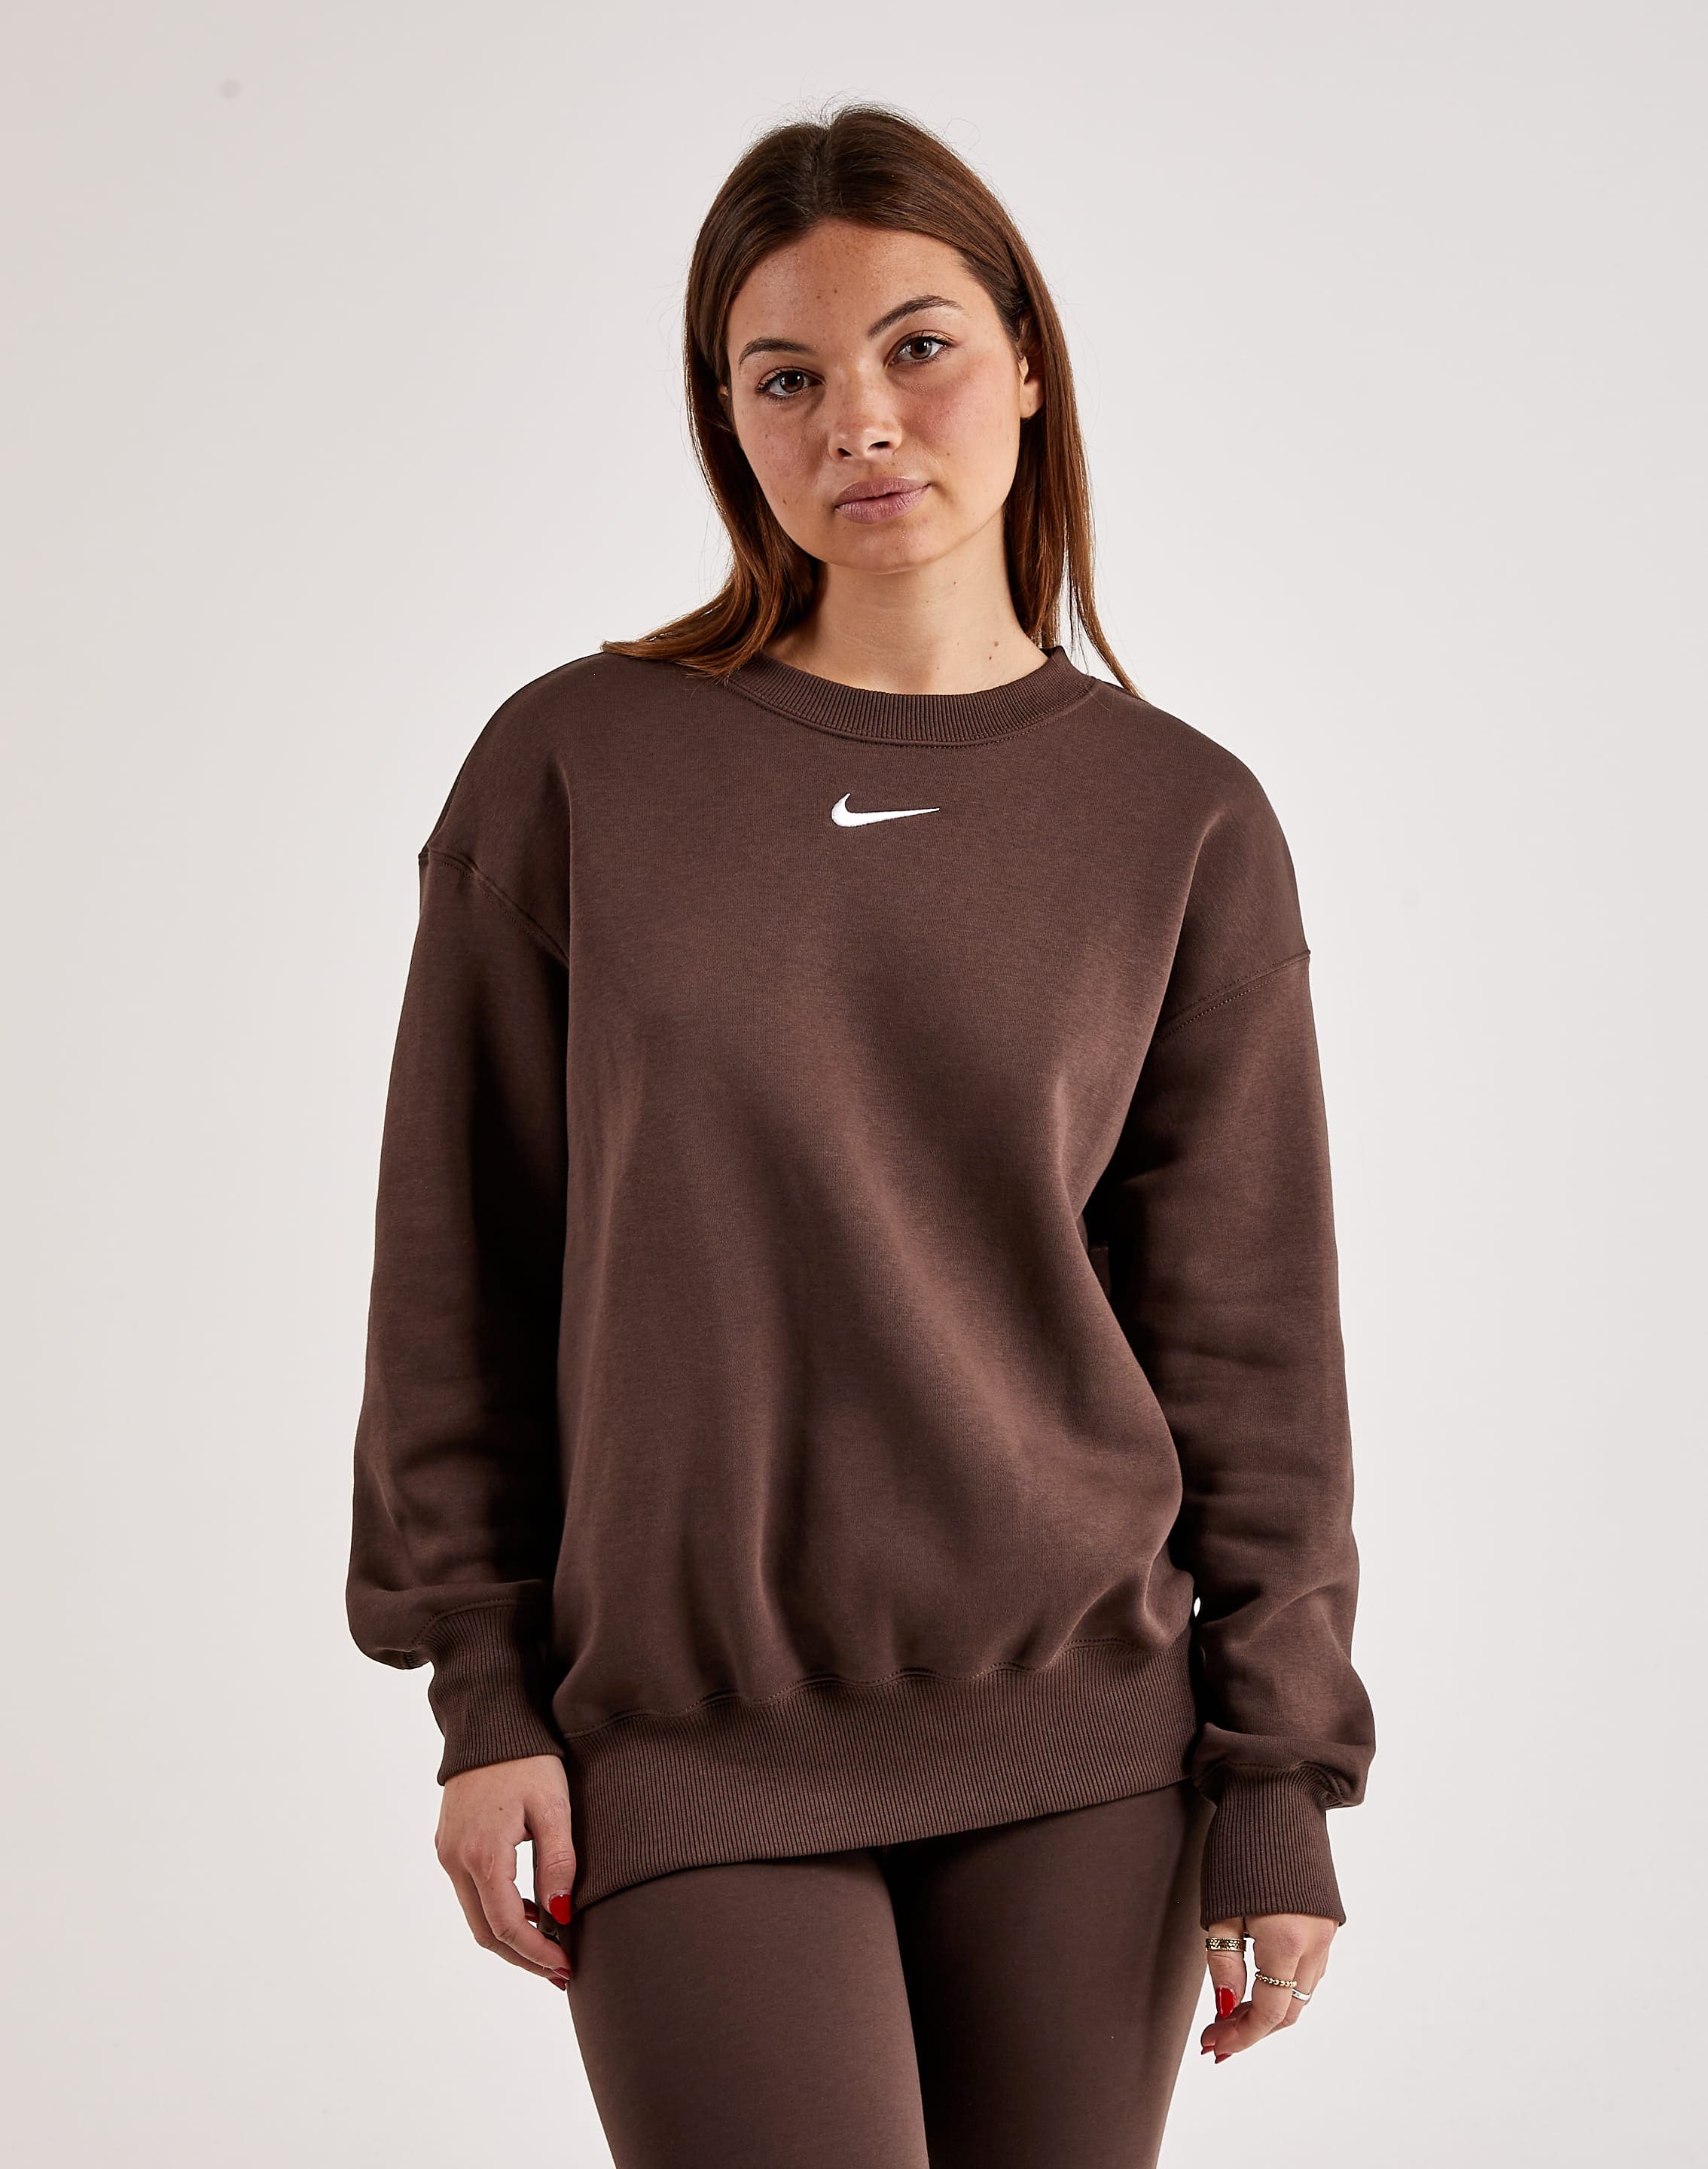 Women's Sportswear Phoenix Fleece Oversized Crewneck Sweatshirt from Nike